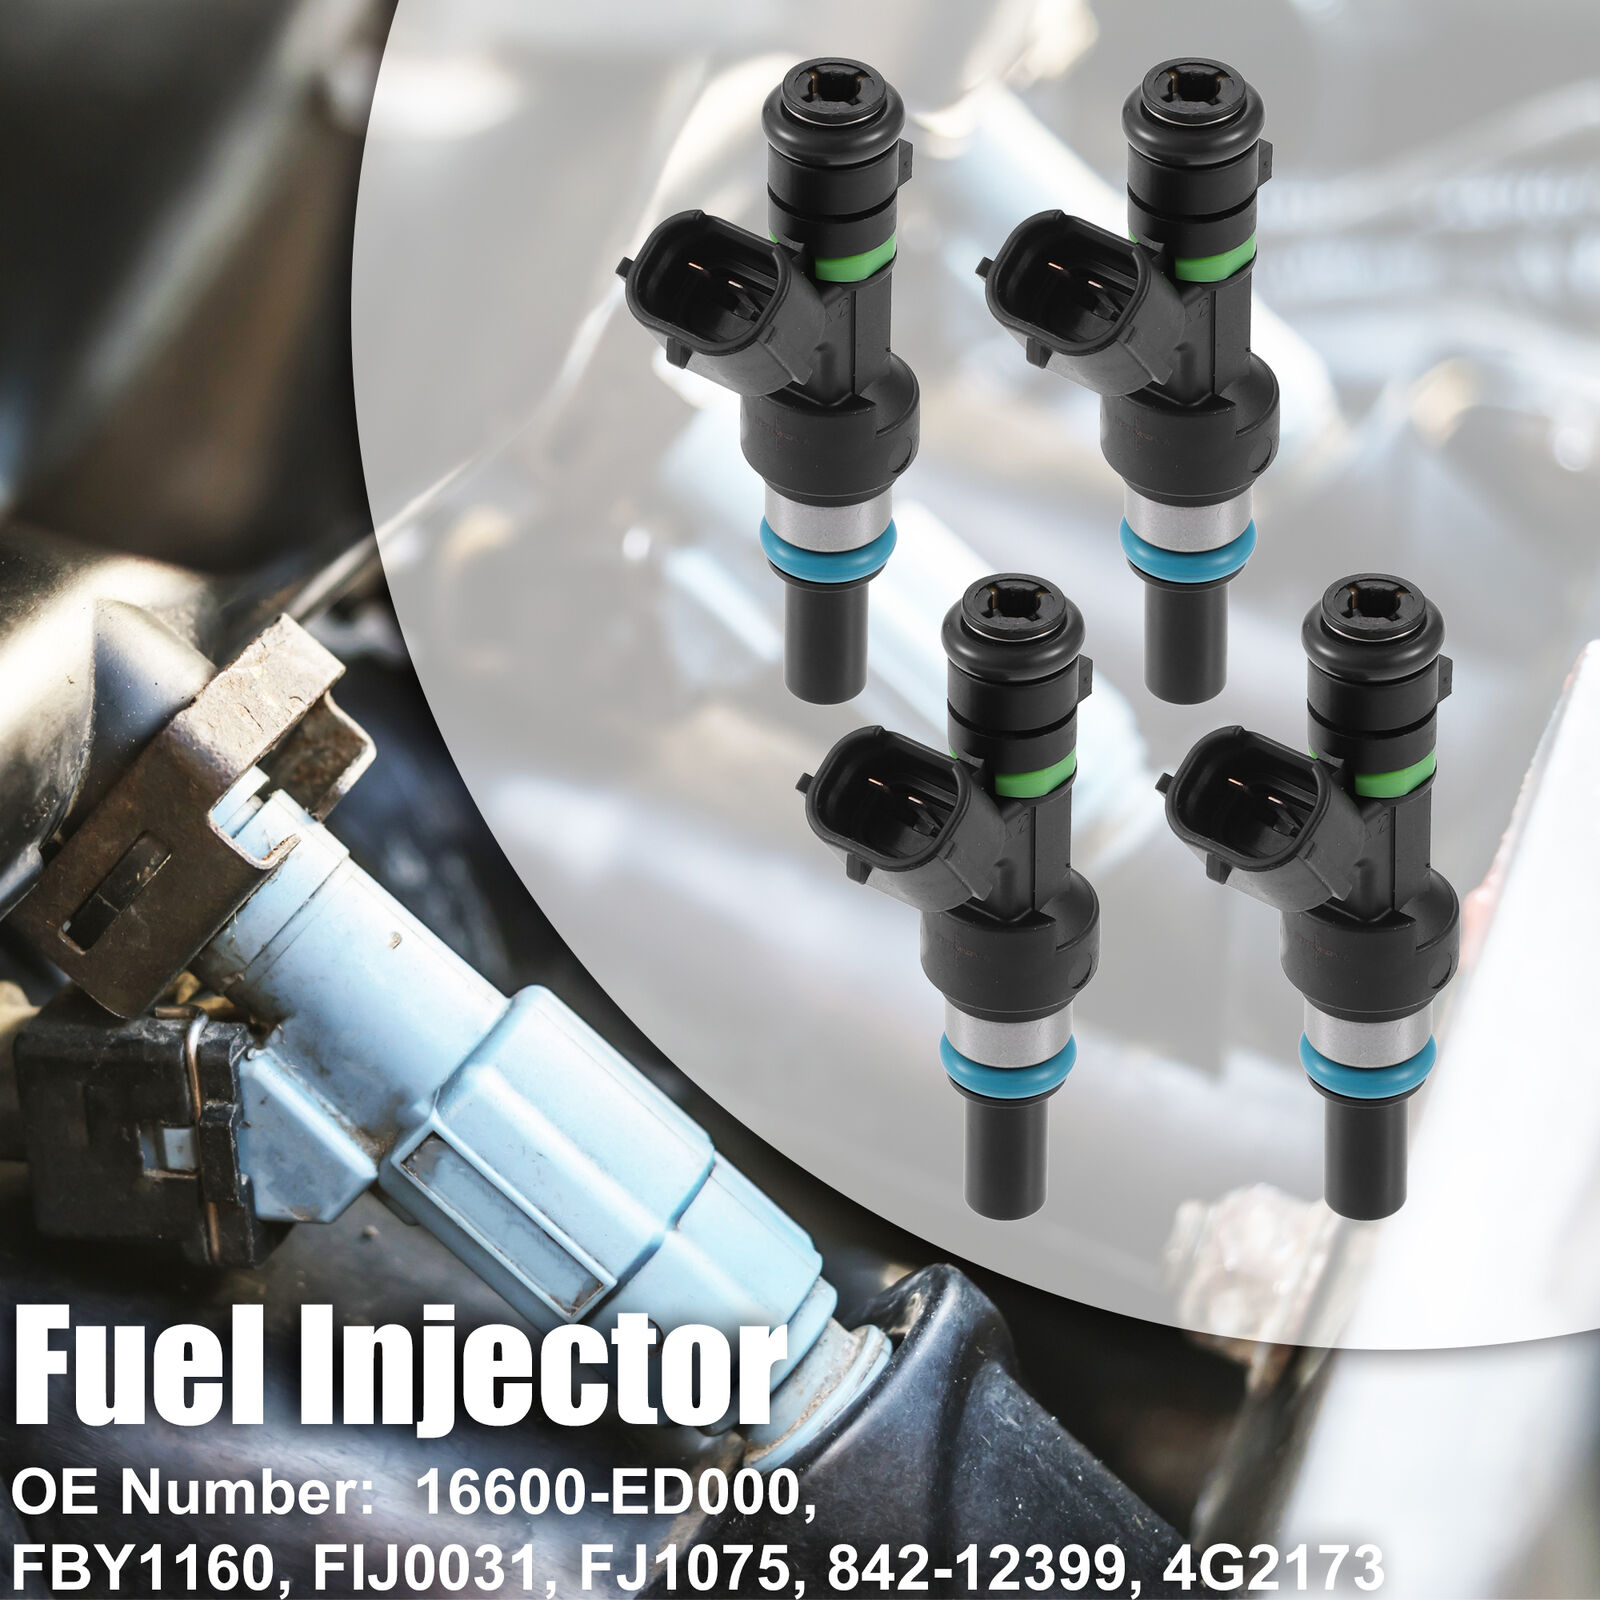 4 Pcs 16600-ED000 Fuel Injector for Nissan Versa Micra Tiida Qashqai 1.6L 07-13